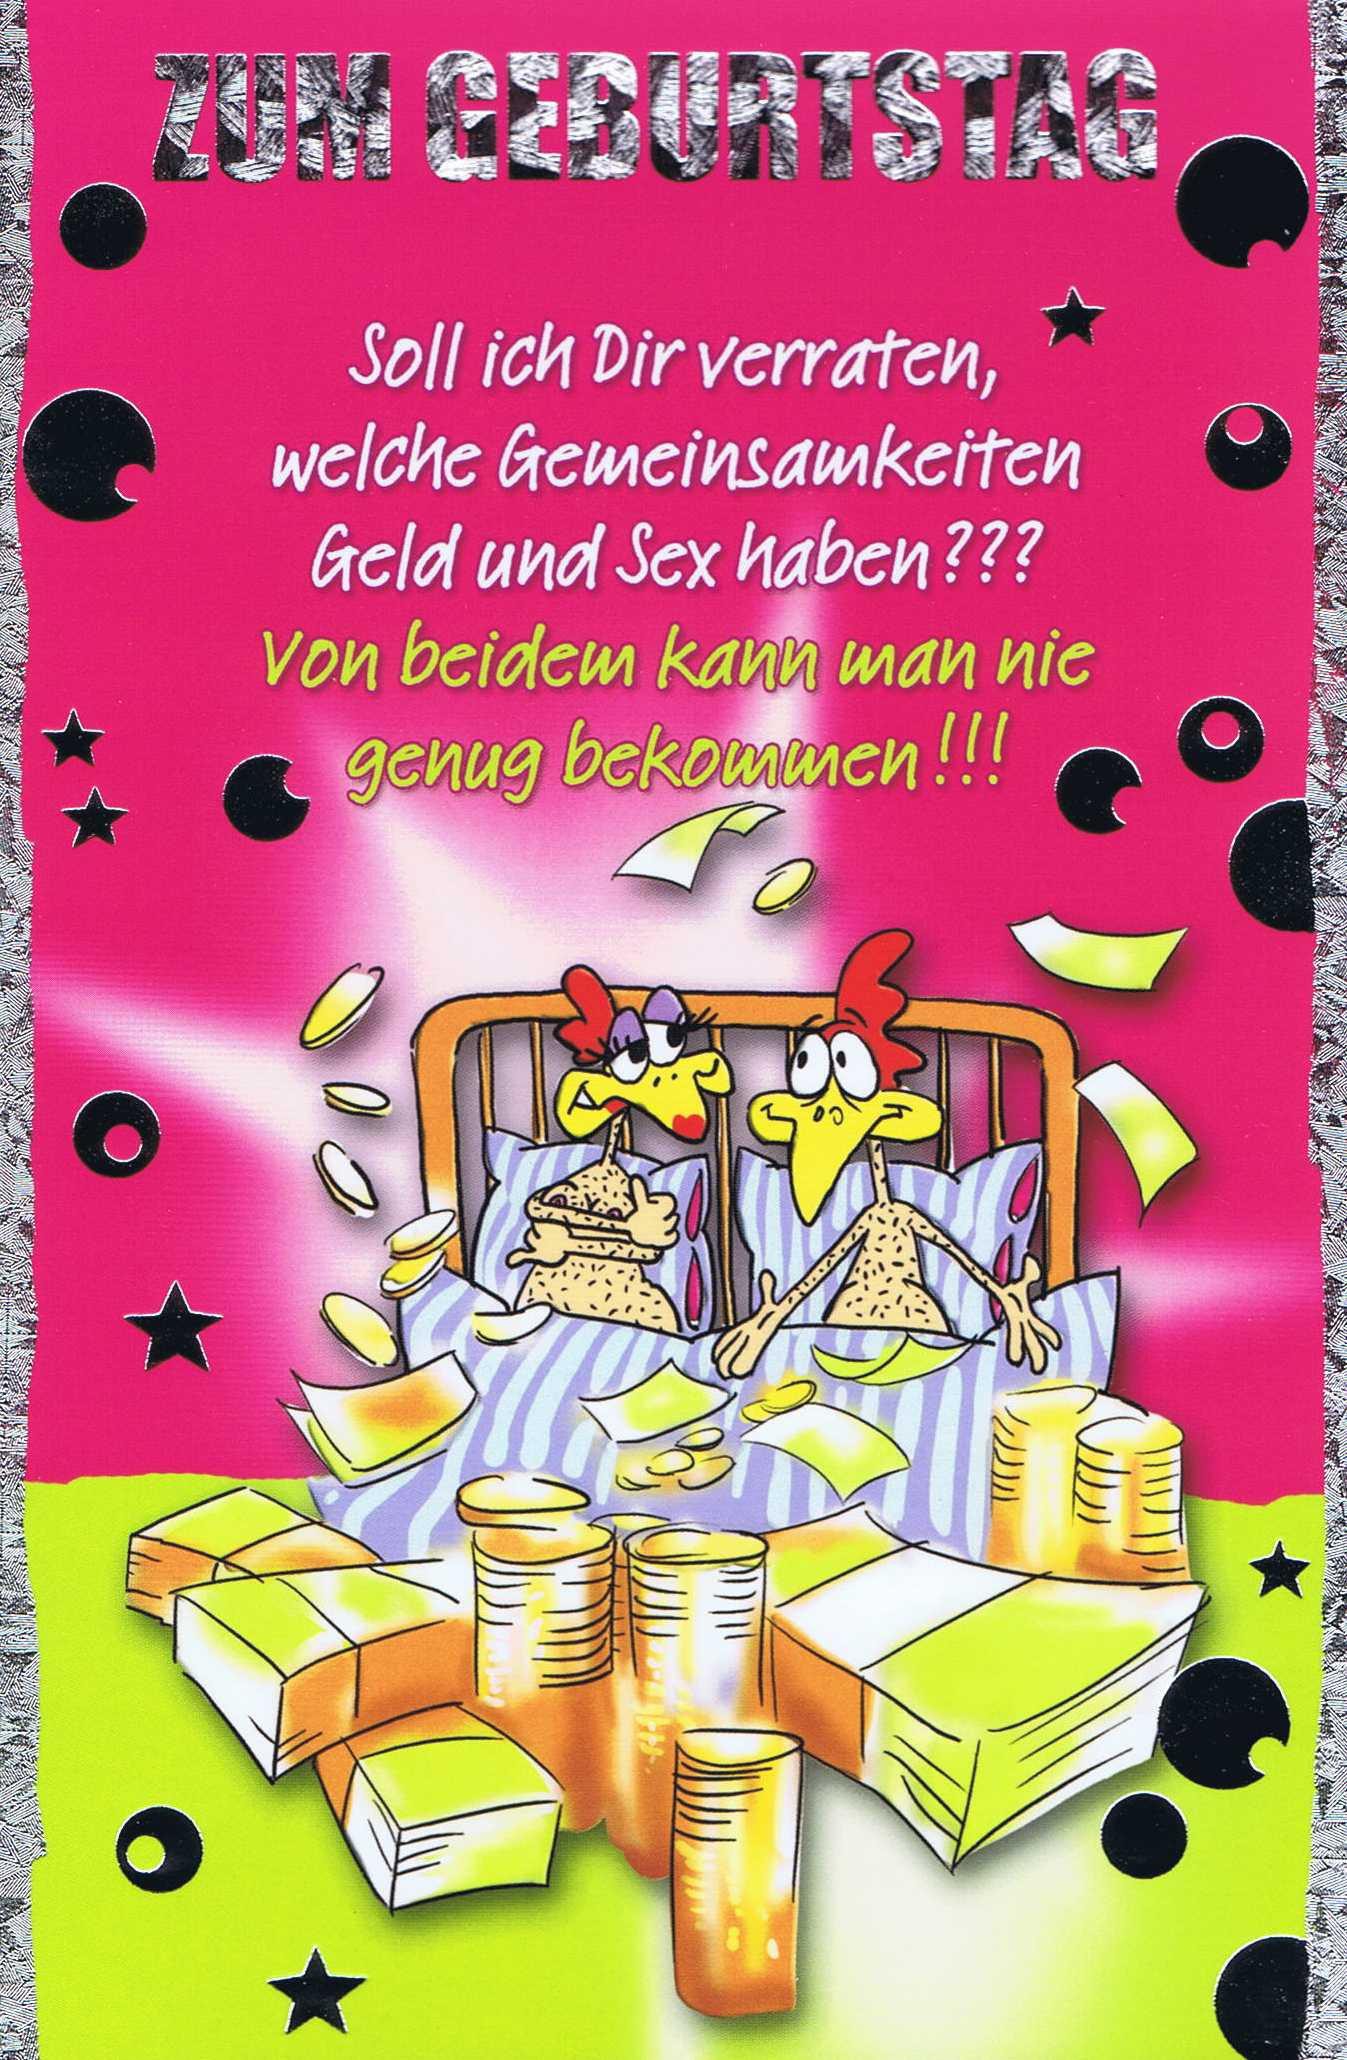 Geburtstagskarte, Humor-Motiv, Klappkarte mit farbigen Umschlag